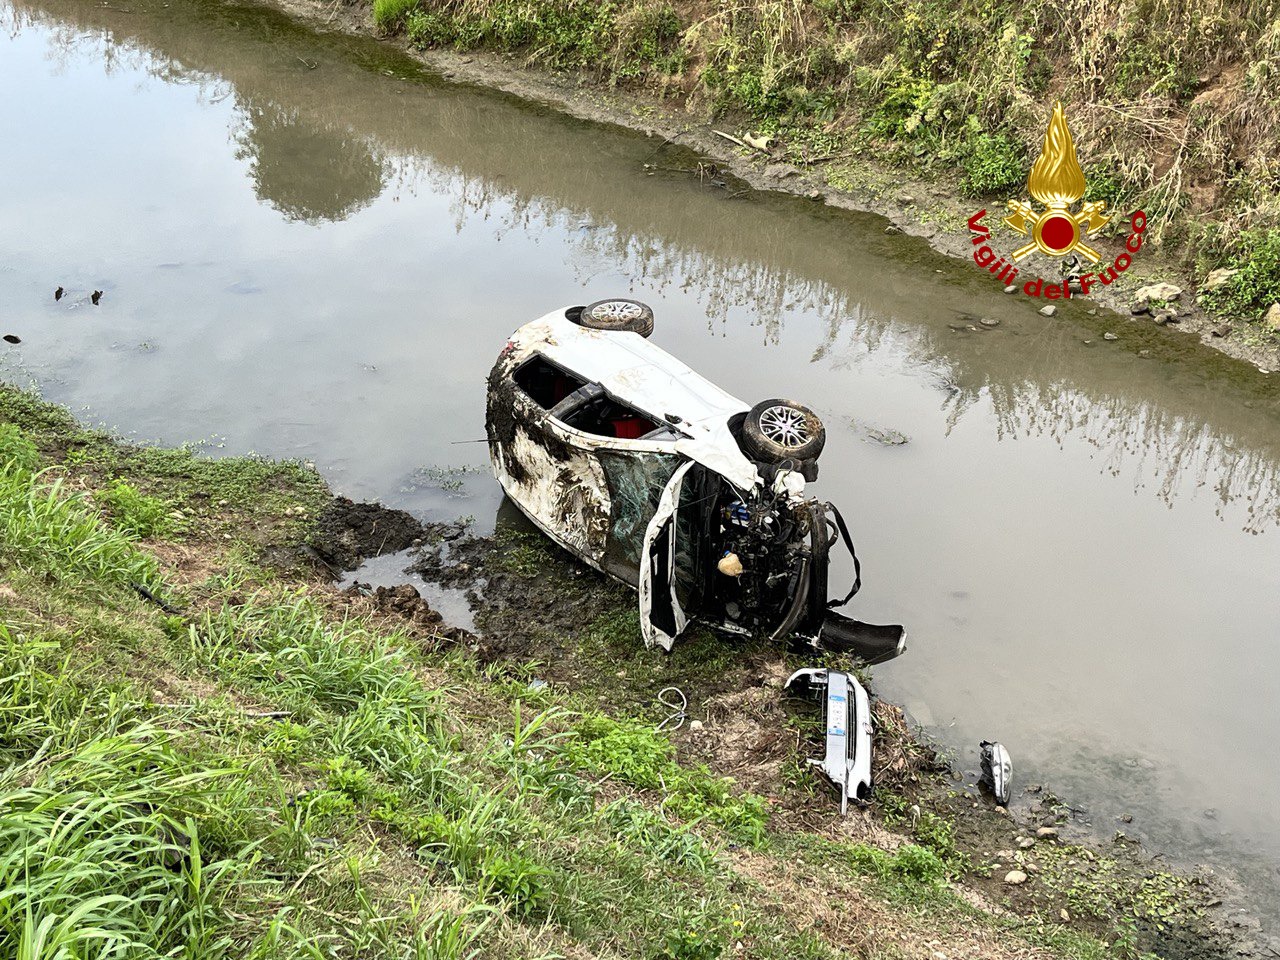 Incidente a Sorego, le immagini dell'auto volata nel canale dopo lo scontro con una moto